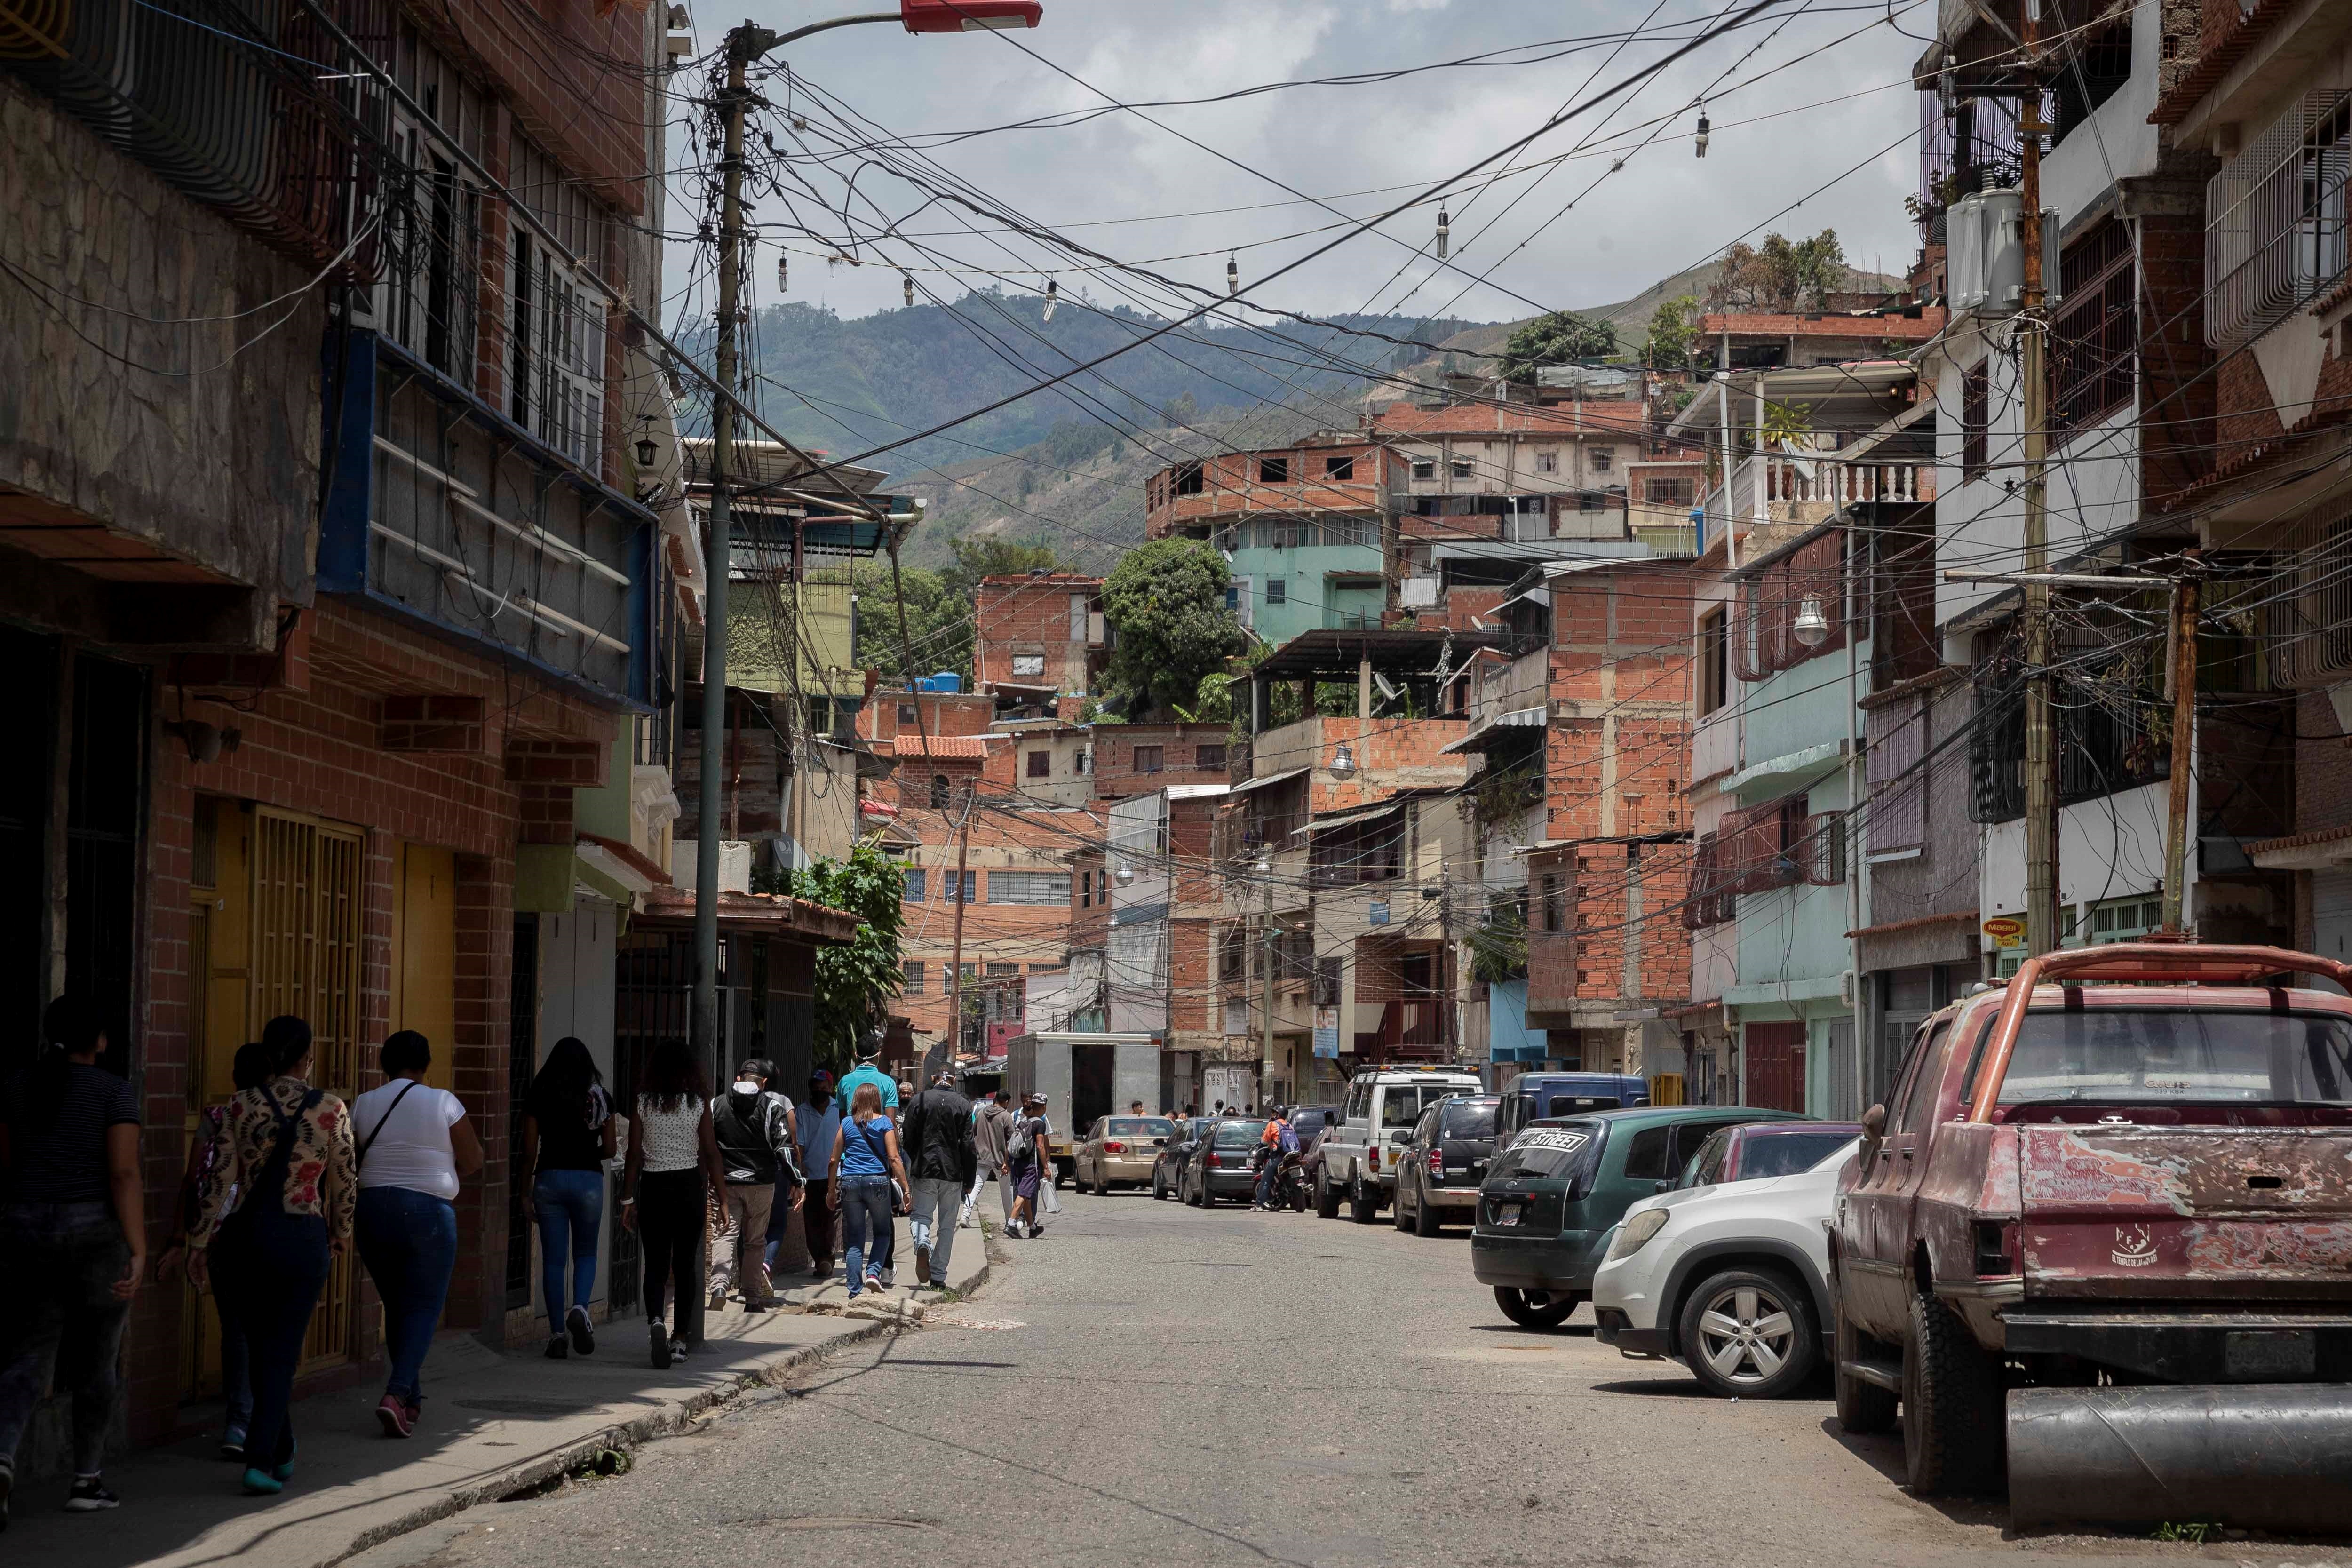 Cidh condenó ejecuciones extrajudiciales de jóvenes venezolanos en situación de pobreza